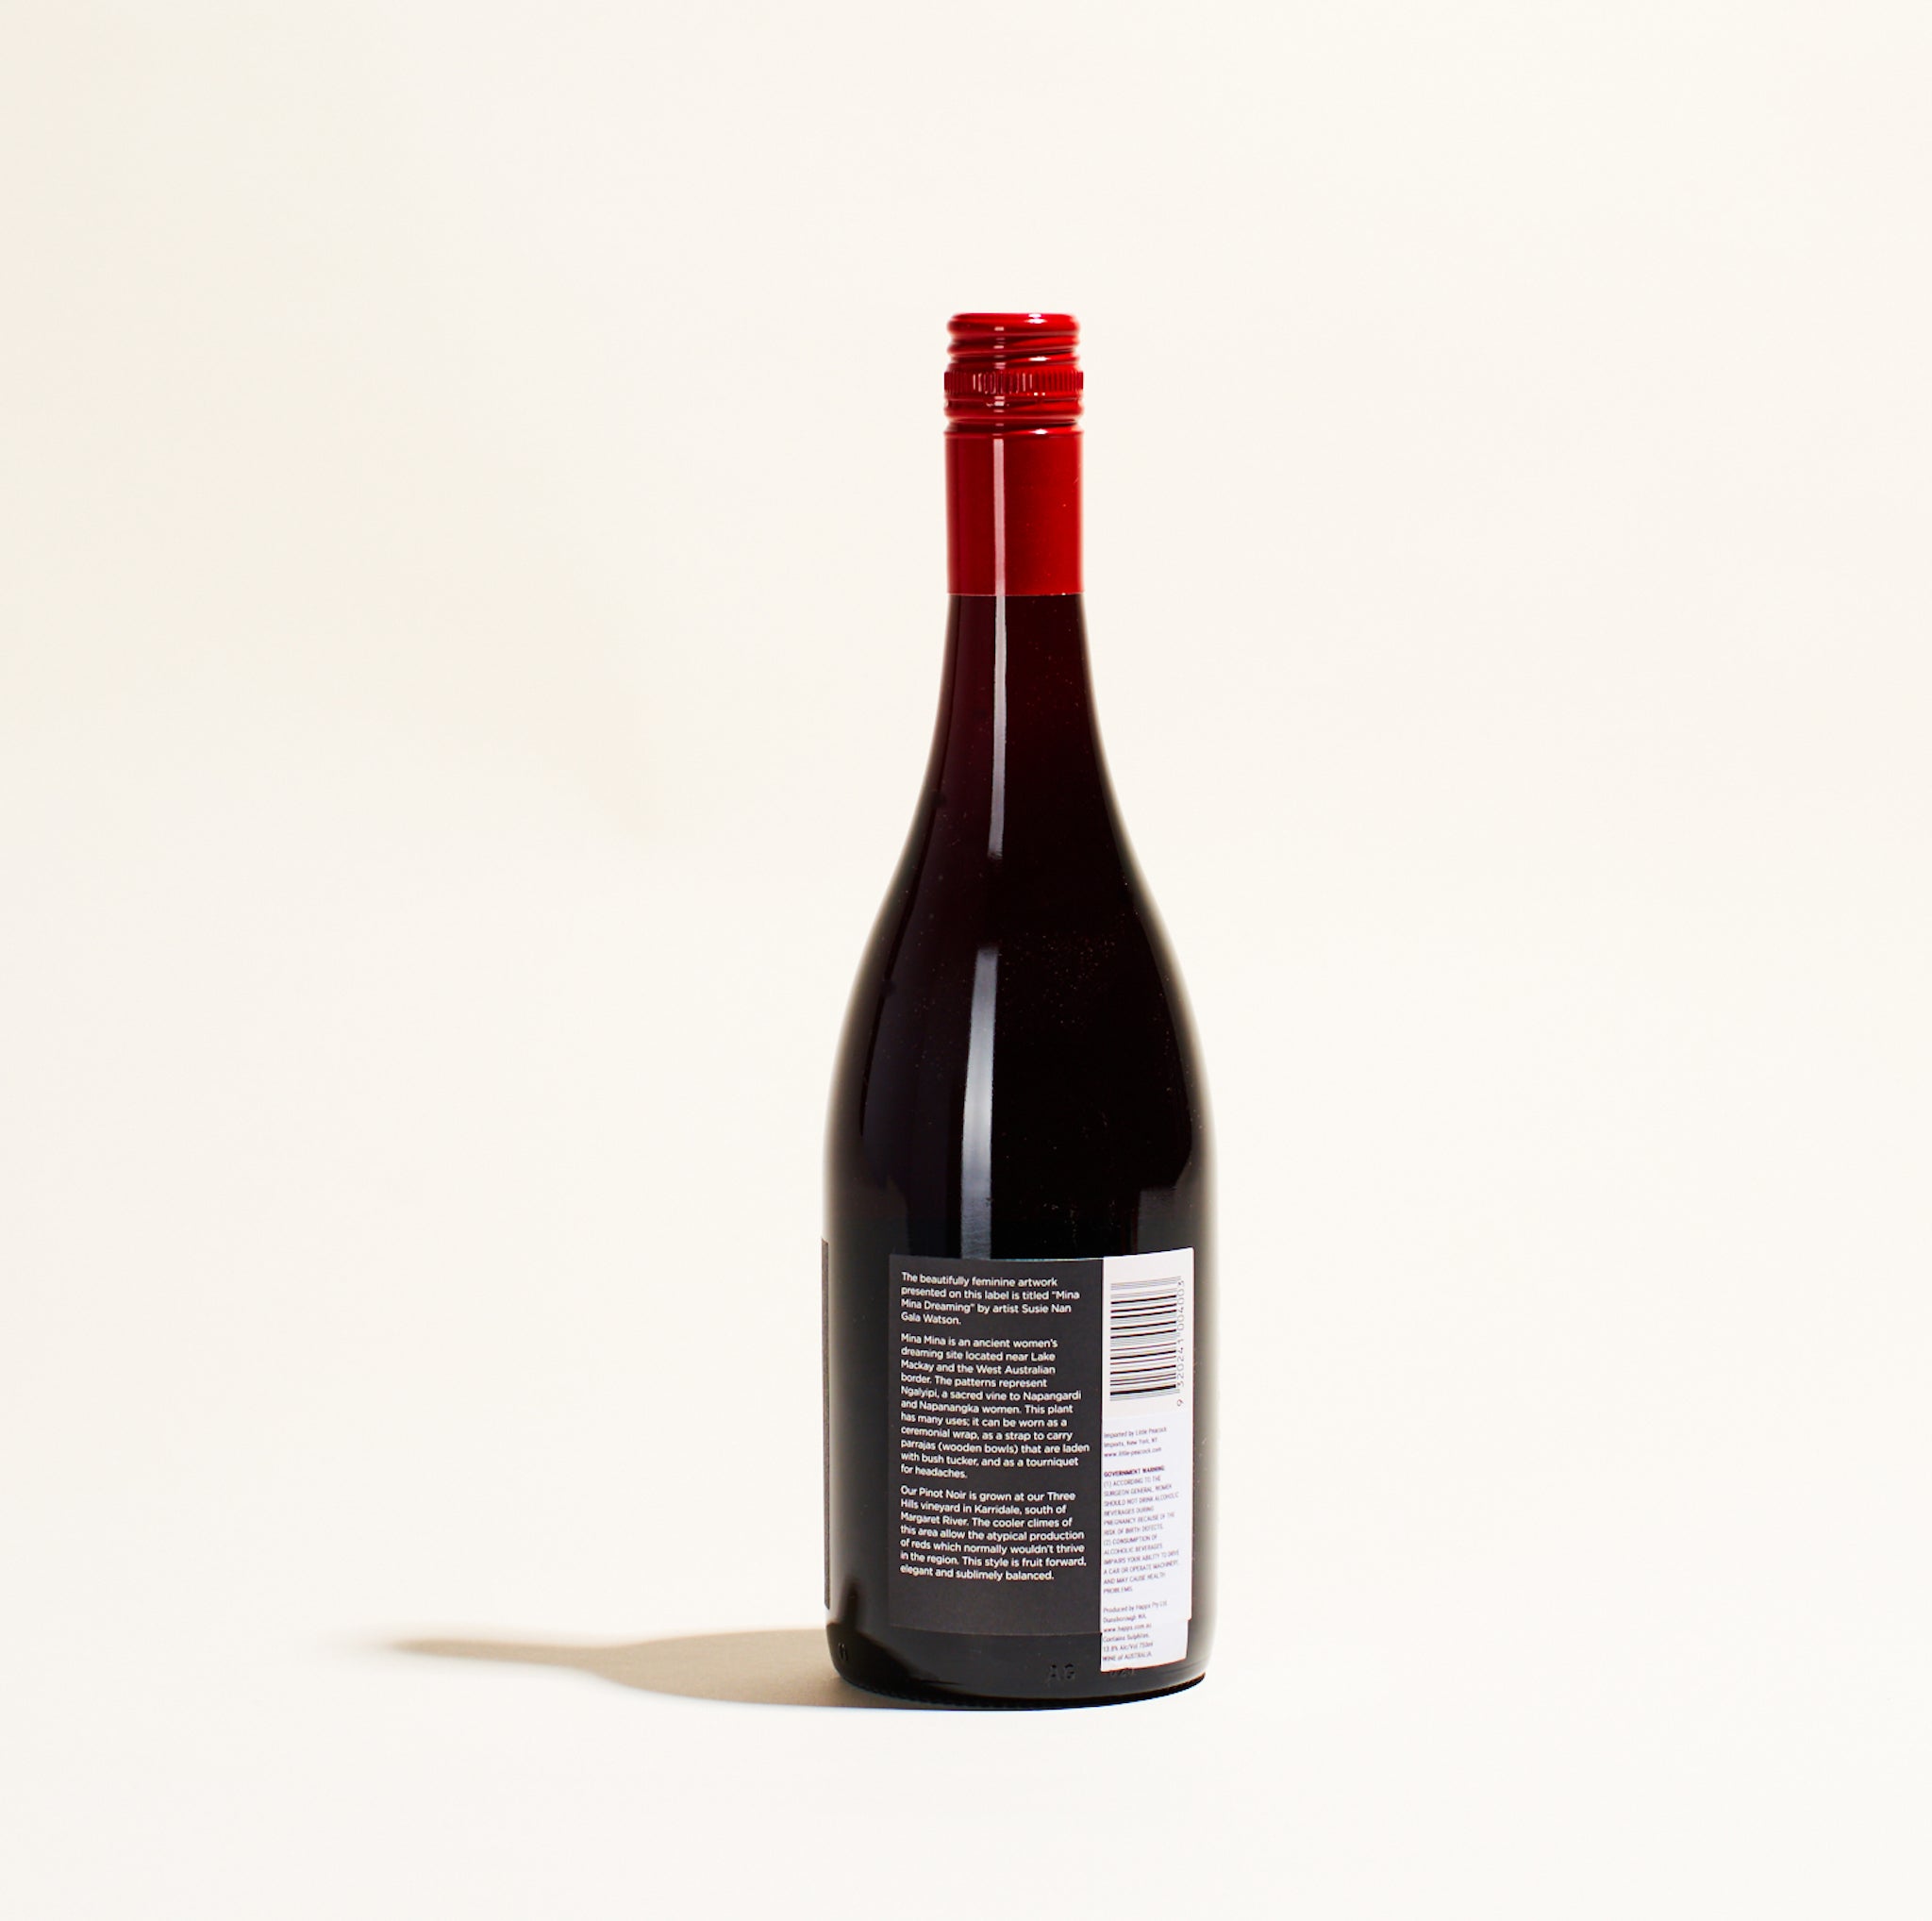 natural red wine bottle pinot noir happs margaret river australia